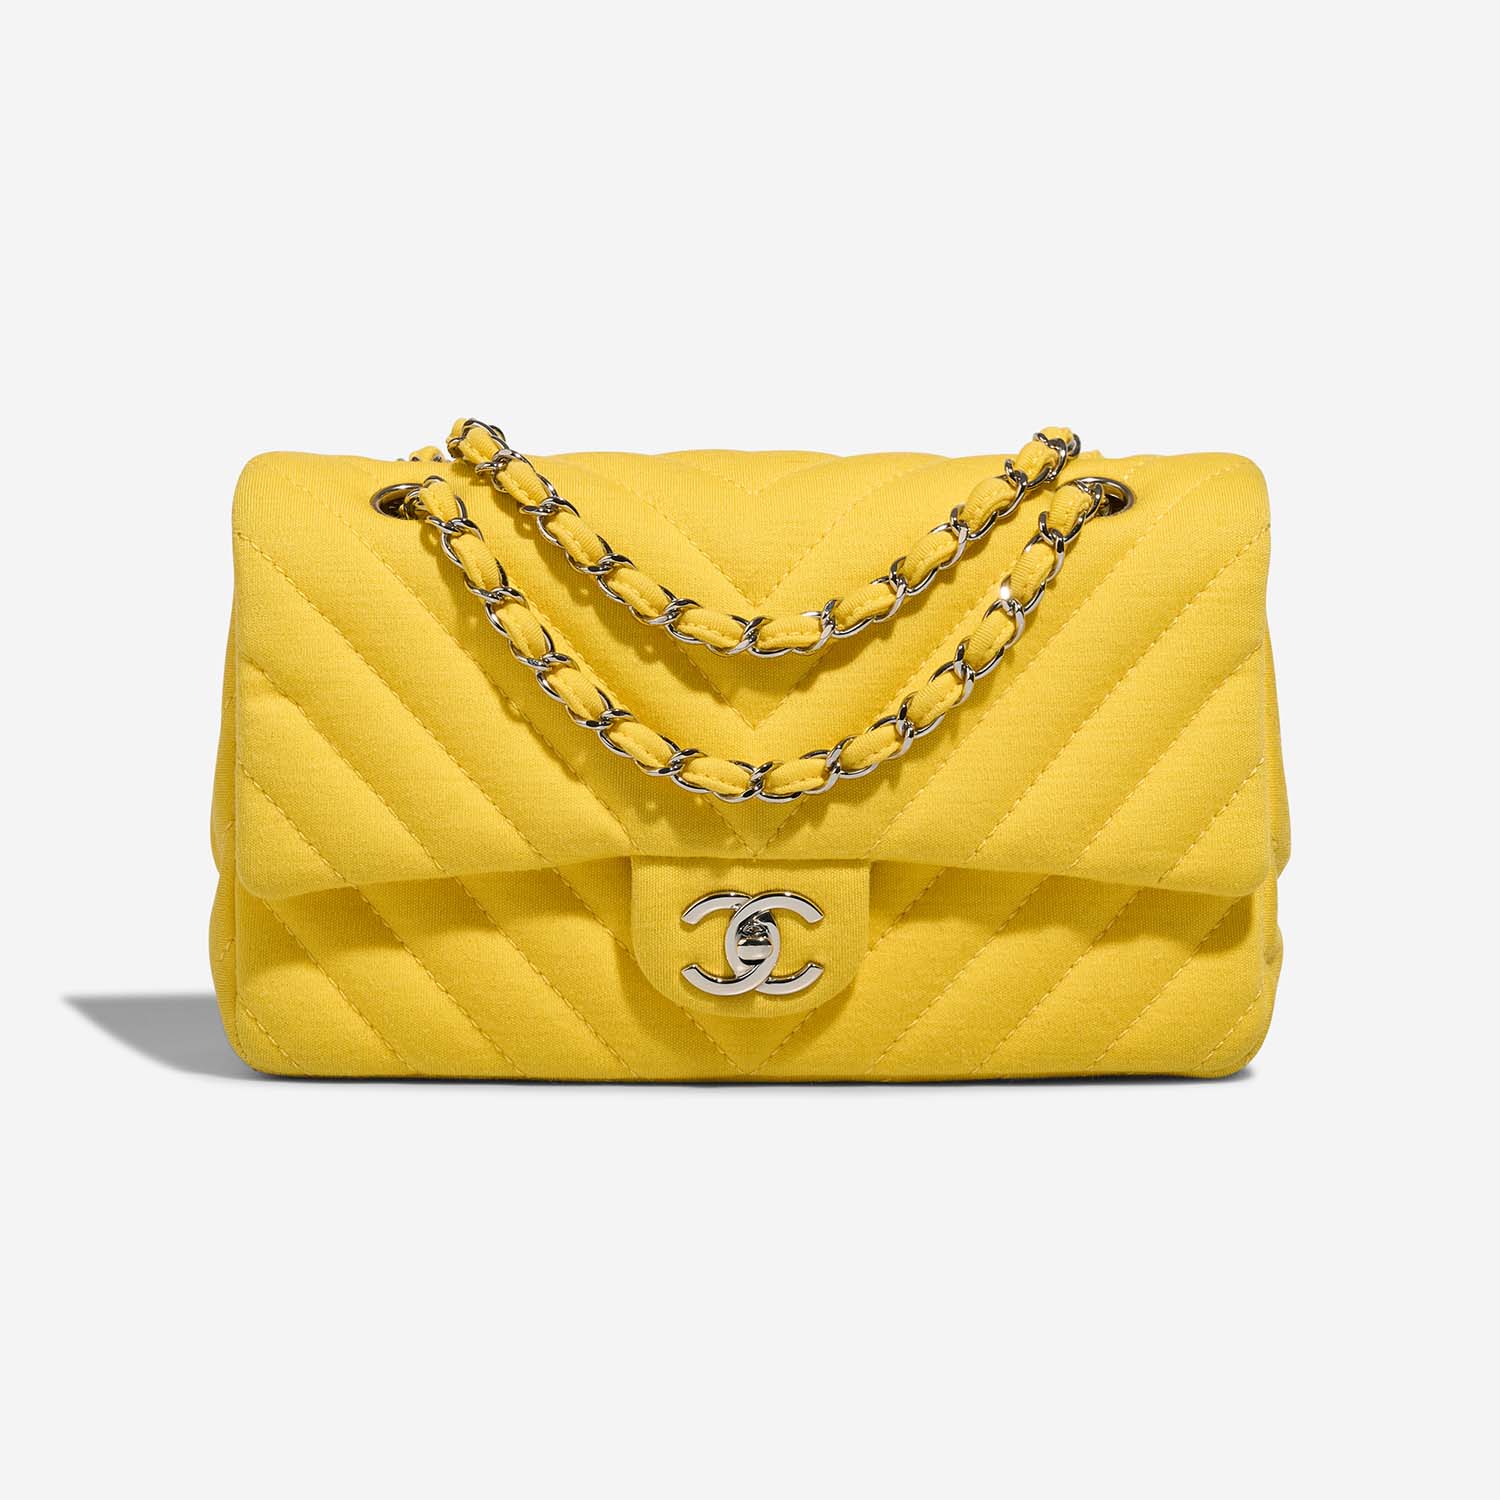 Chanel Timeless Medium Yellow Front S | Verkaufen Sie Ihre Designer-Tasche auf Saclab.com